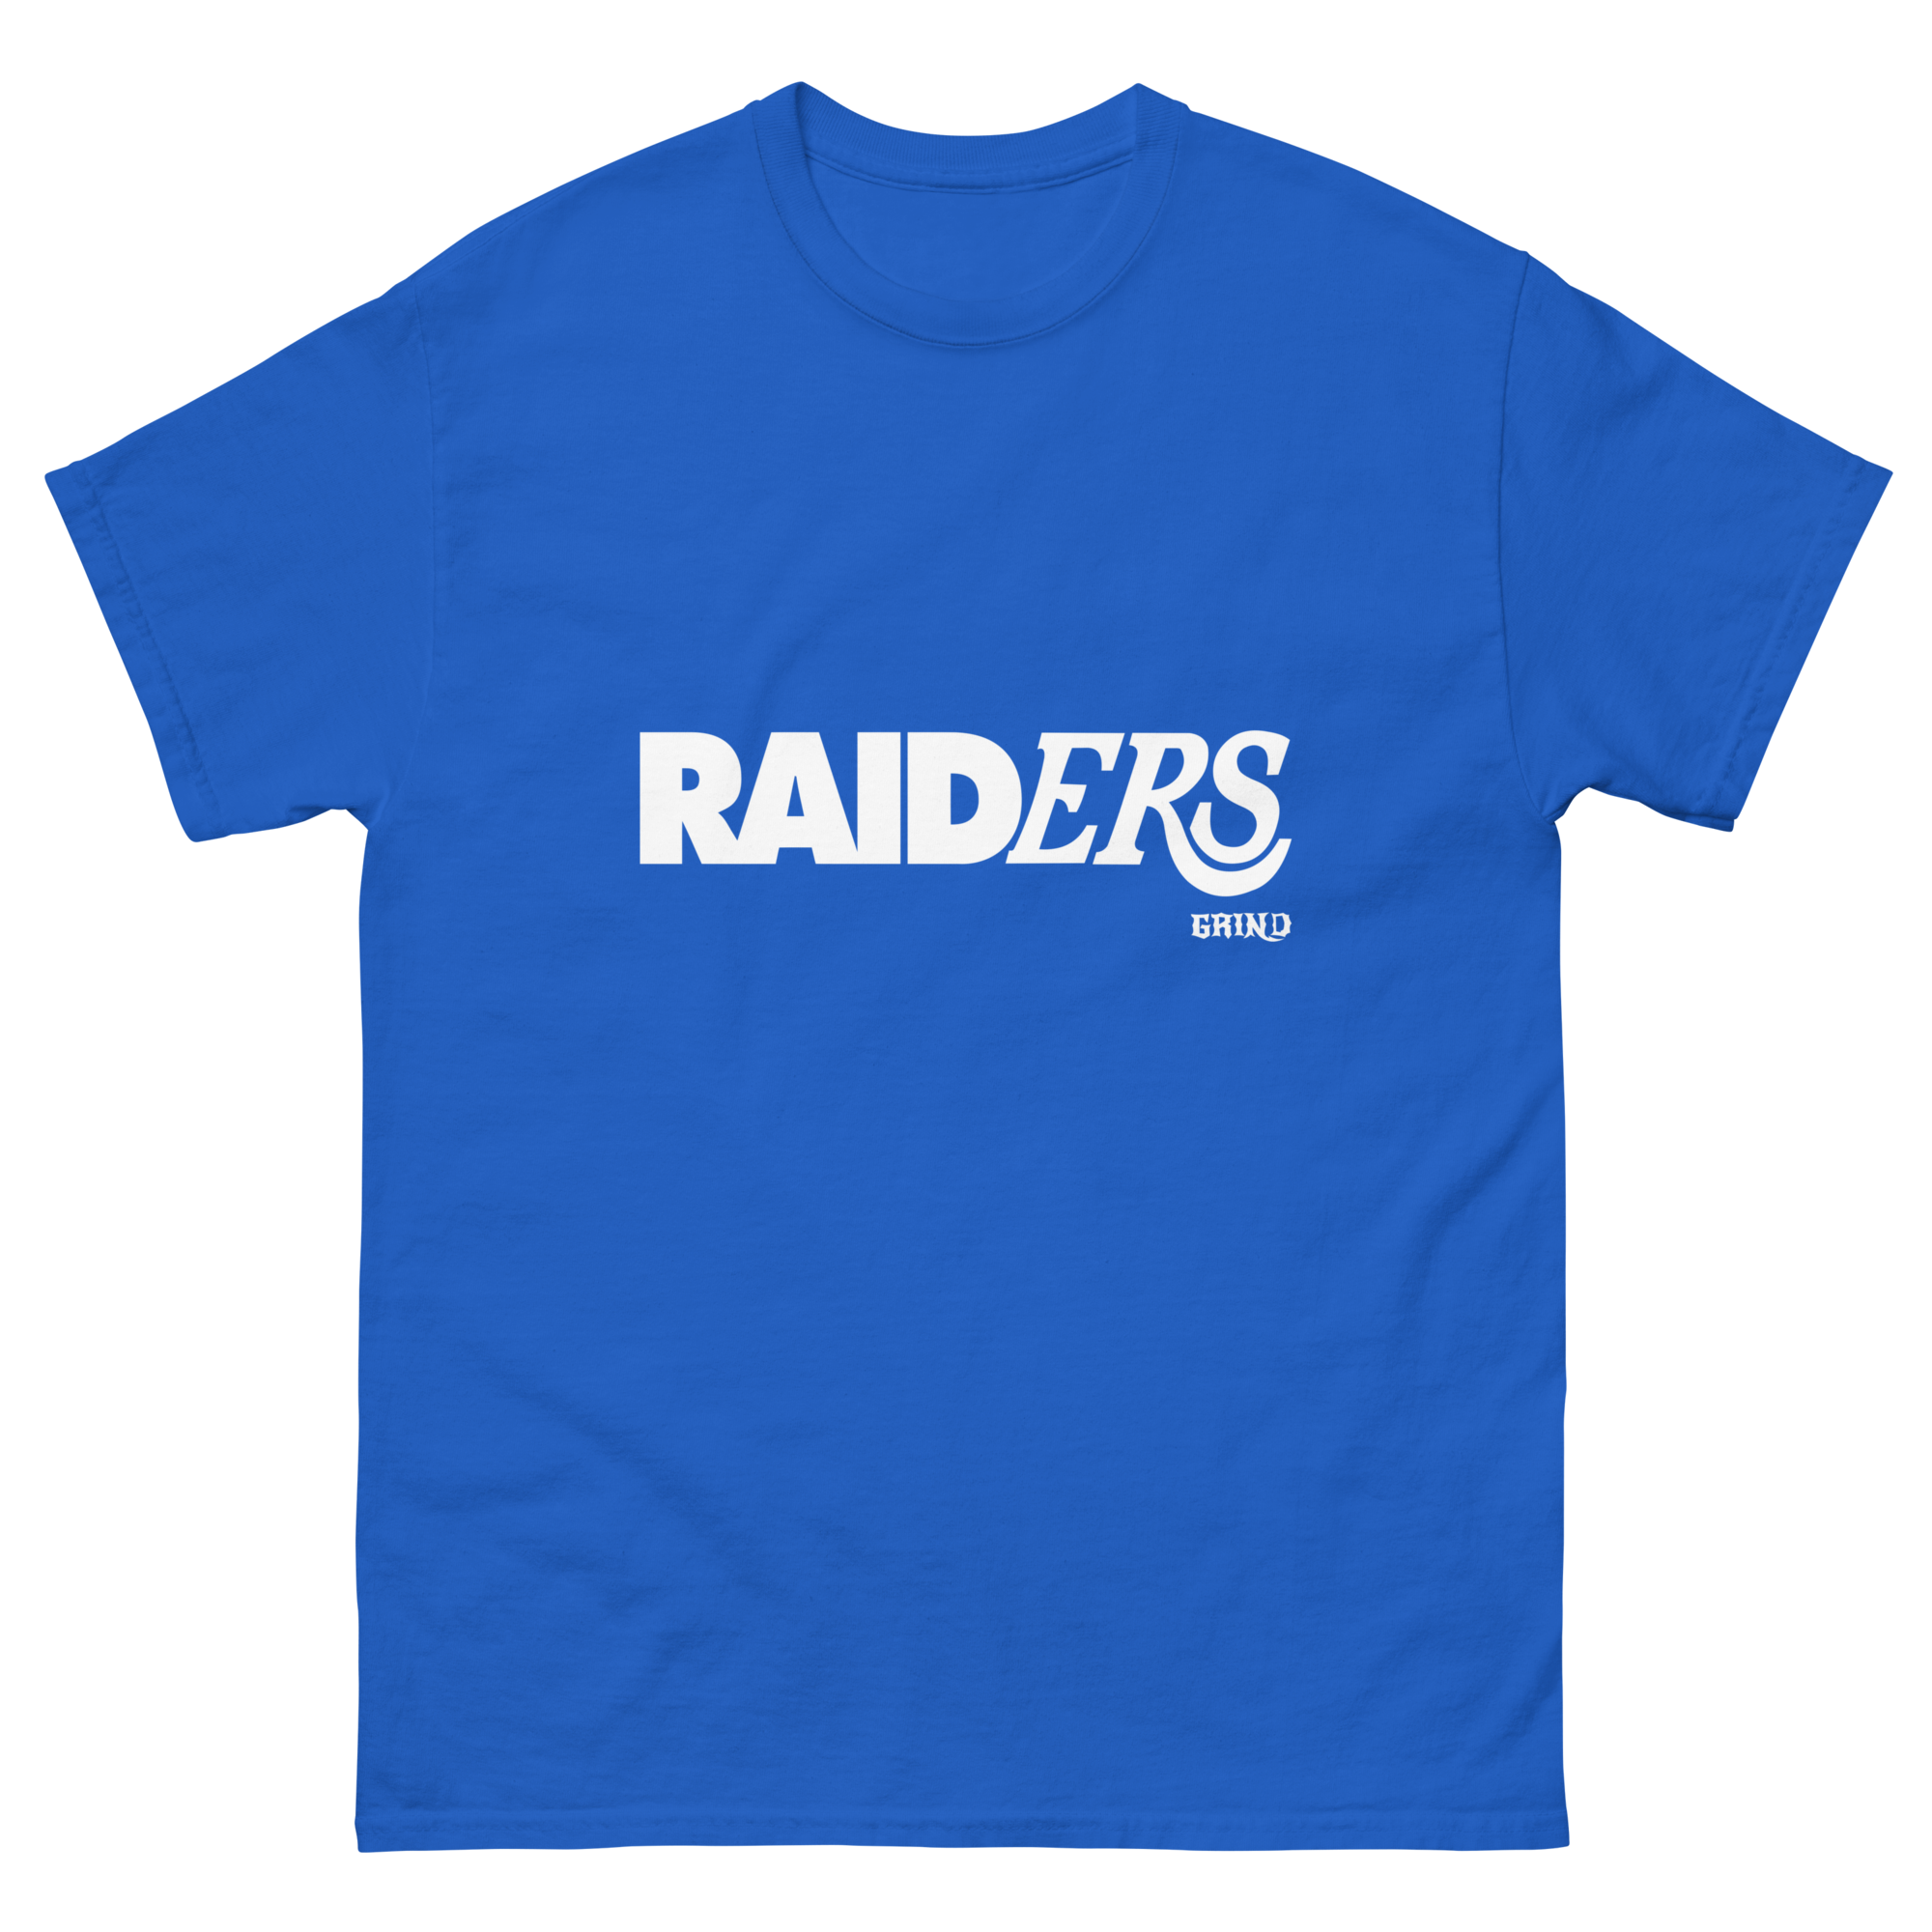 GRIND Raider Lakers Shirt (Dark Colors)